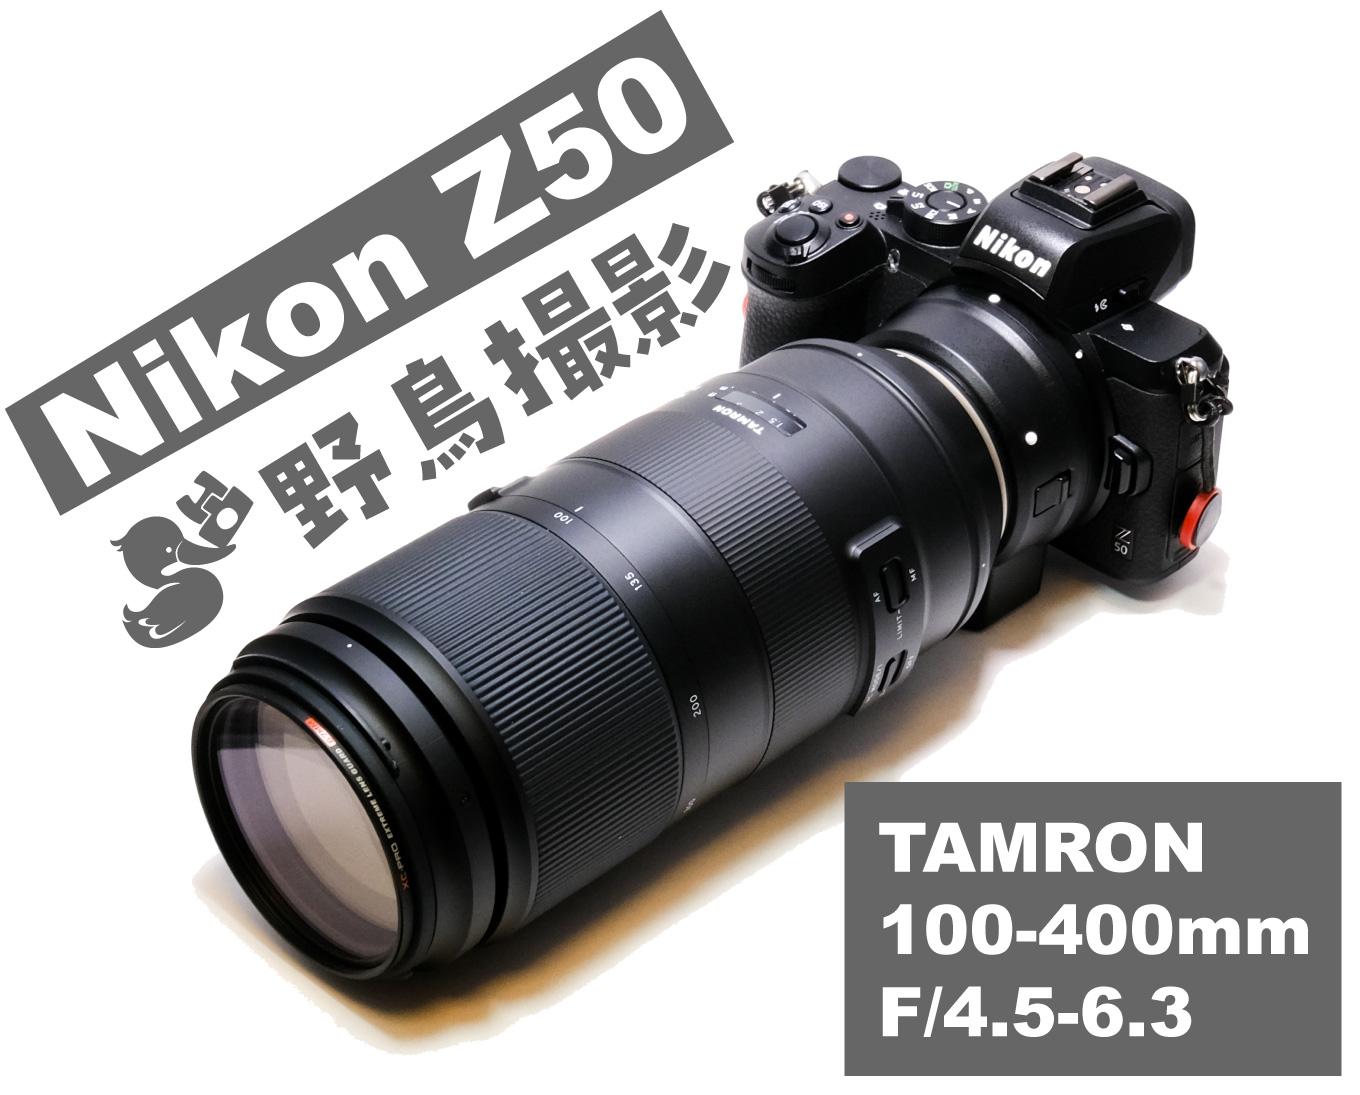 Nikon Z50とTAMRON 100-400mm F/4.5-6.3で野鳥撮影が楽しい！ミラーレスカメラで野鳥撮影するメリット・デメリット